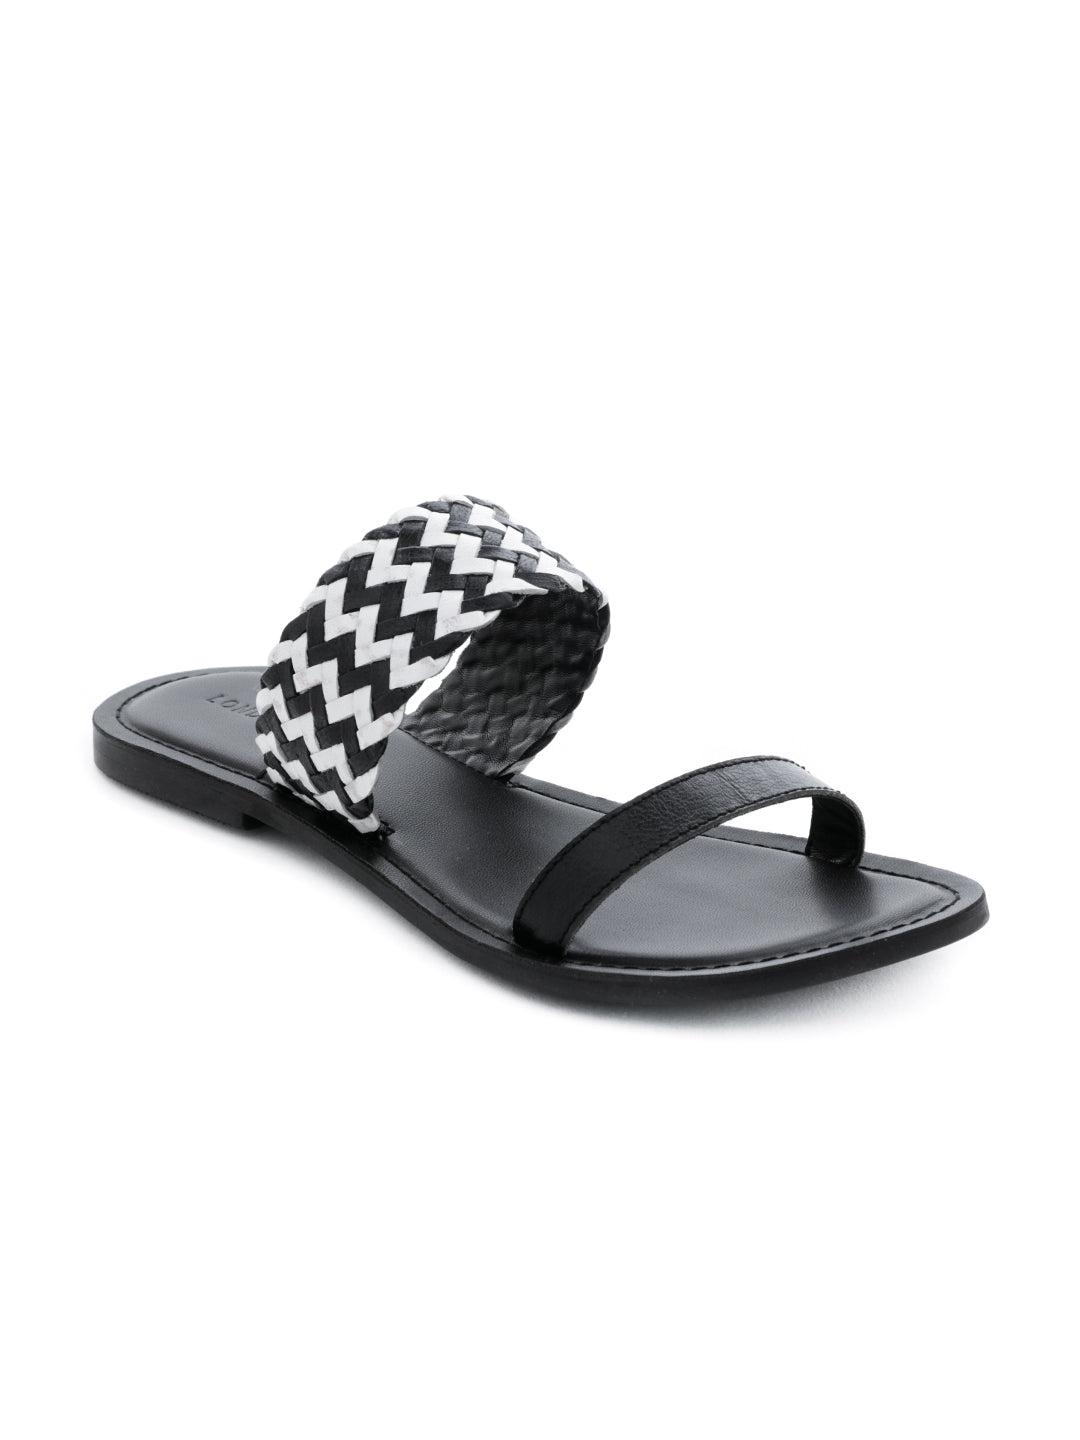 Black White Weaved Strap Sandal